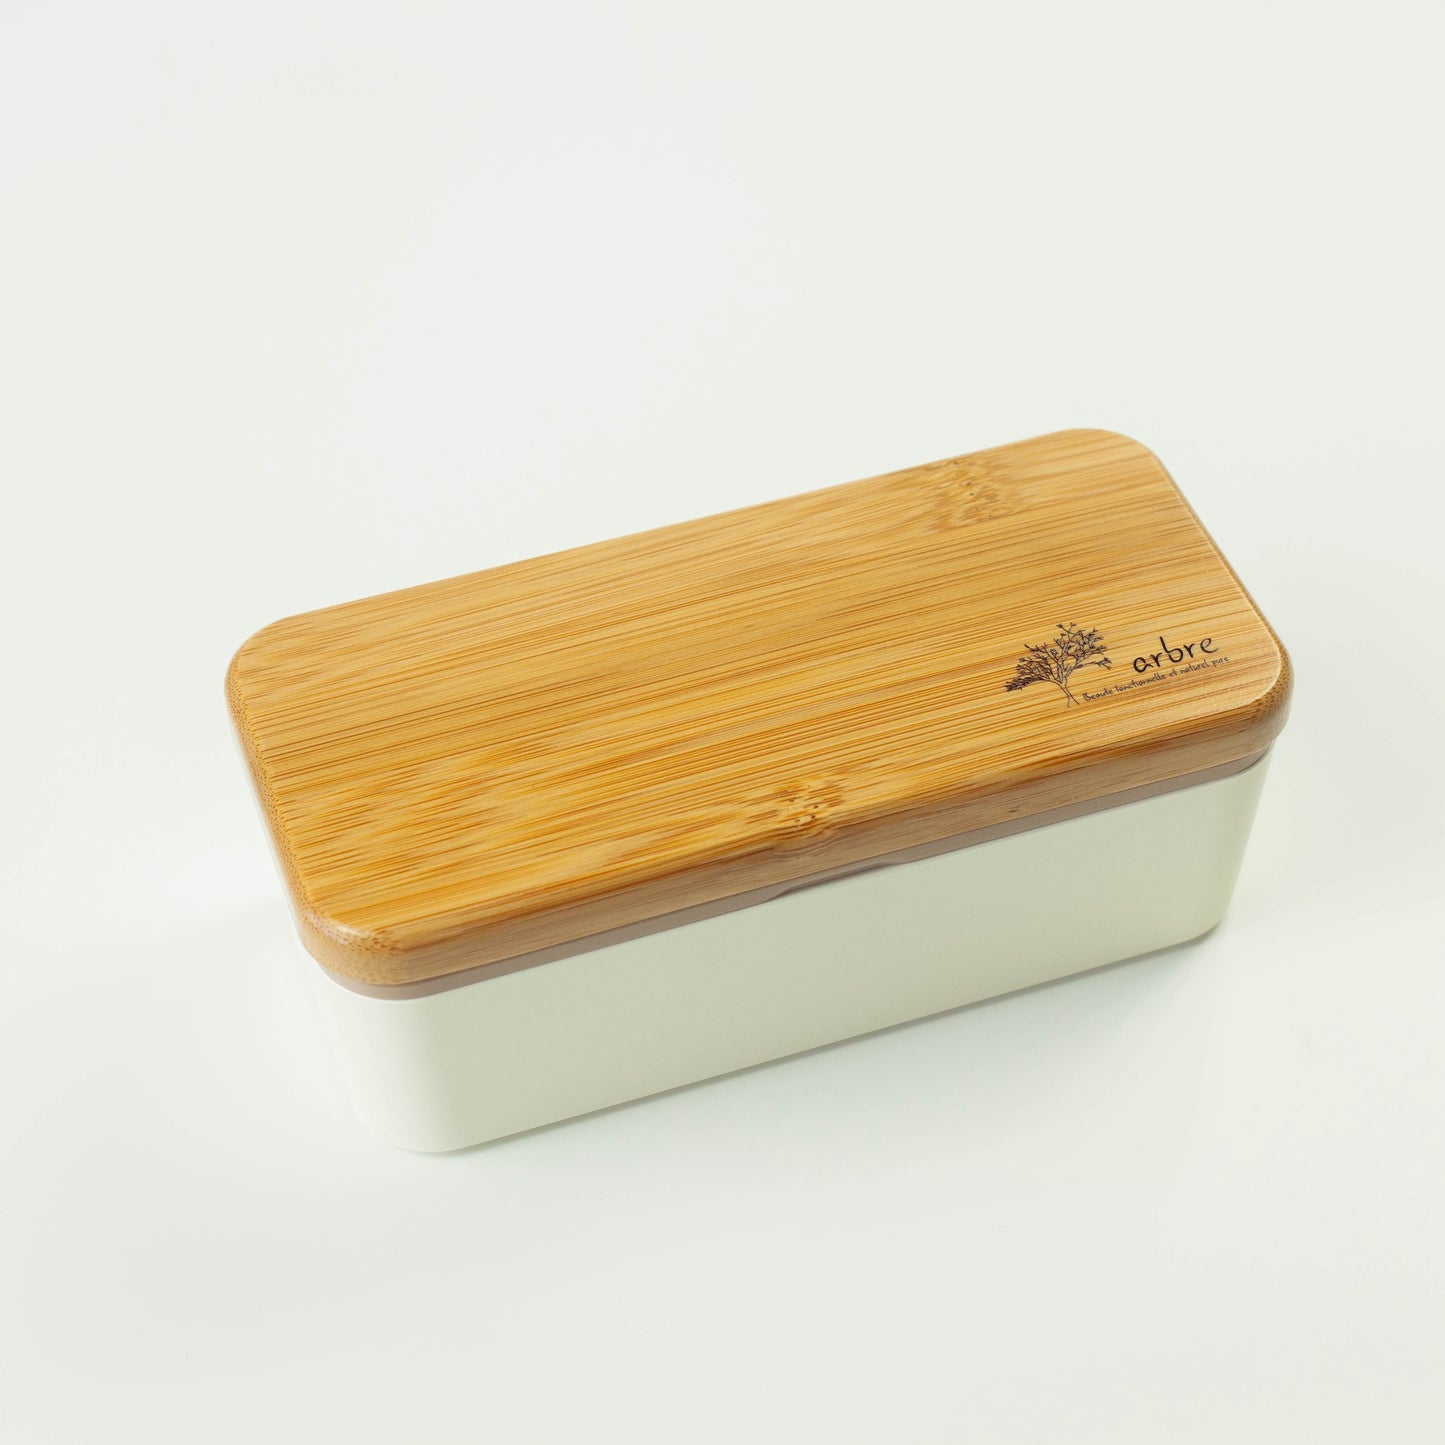 Arbre Compact Two-Tier Rectangular Bento Box | Cream (730ml)